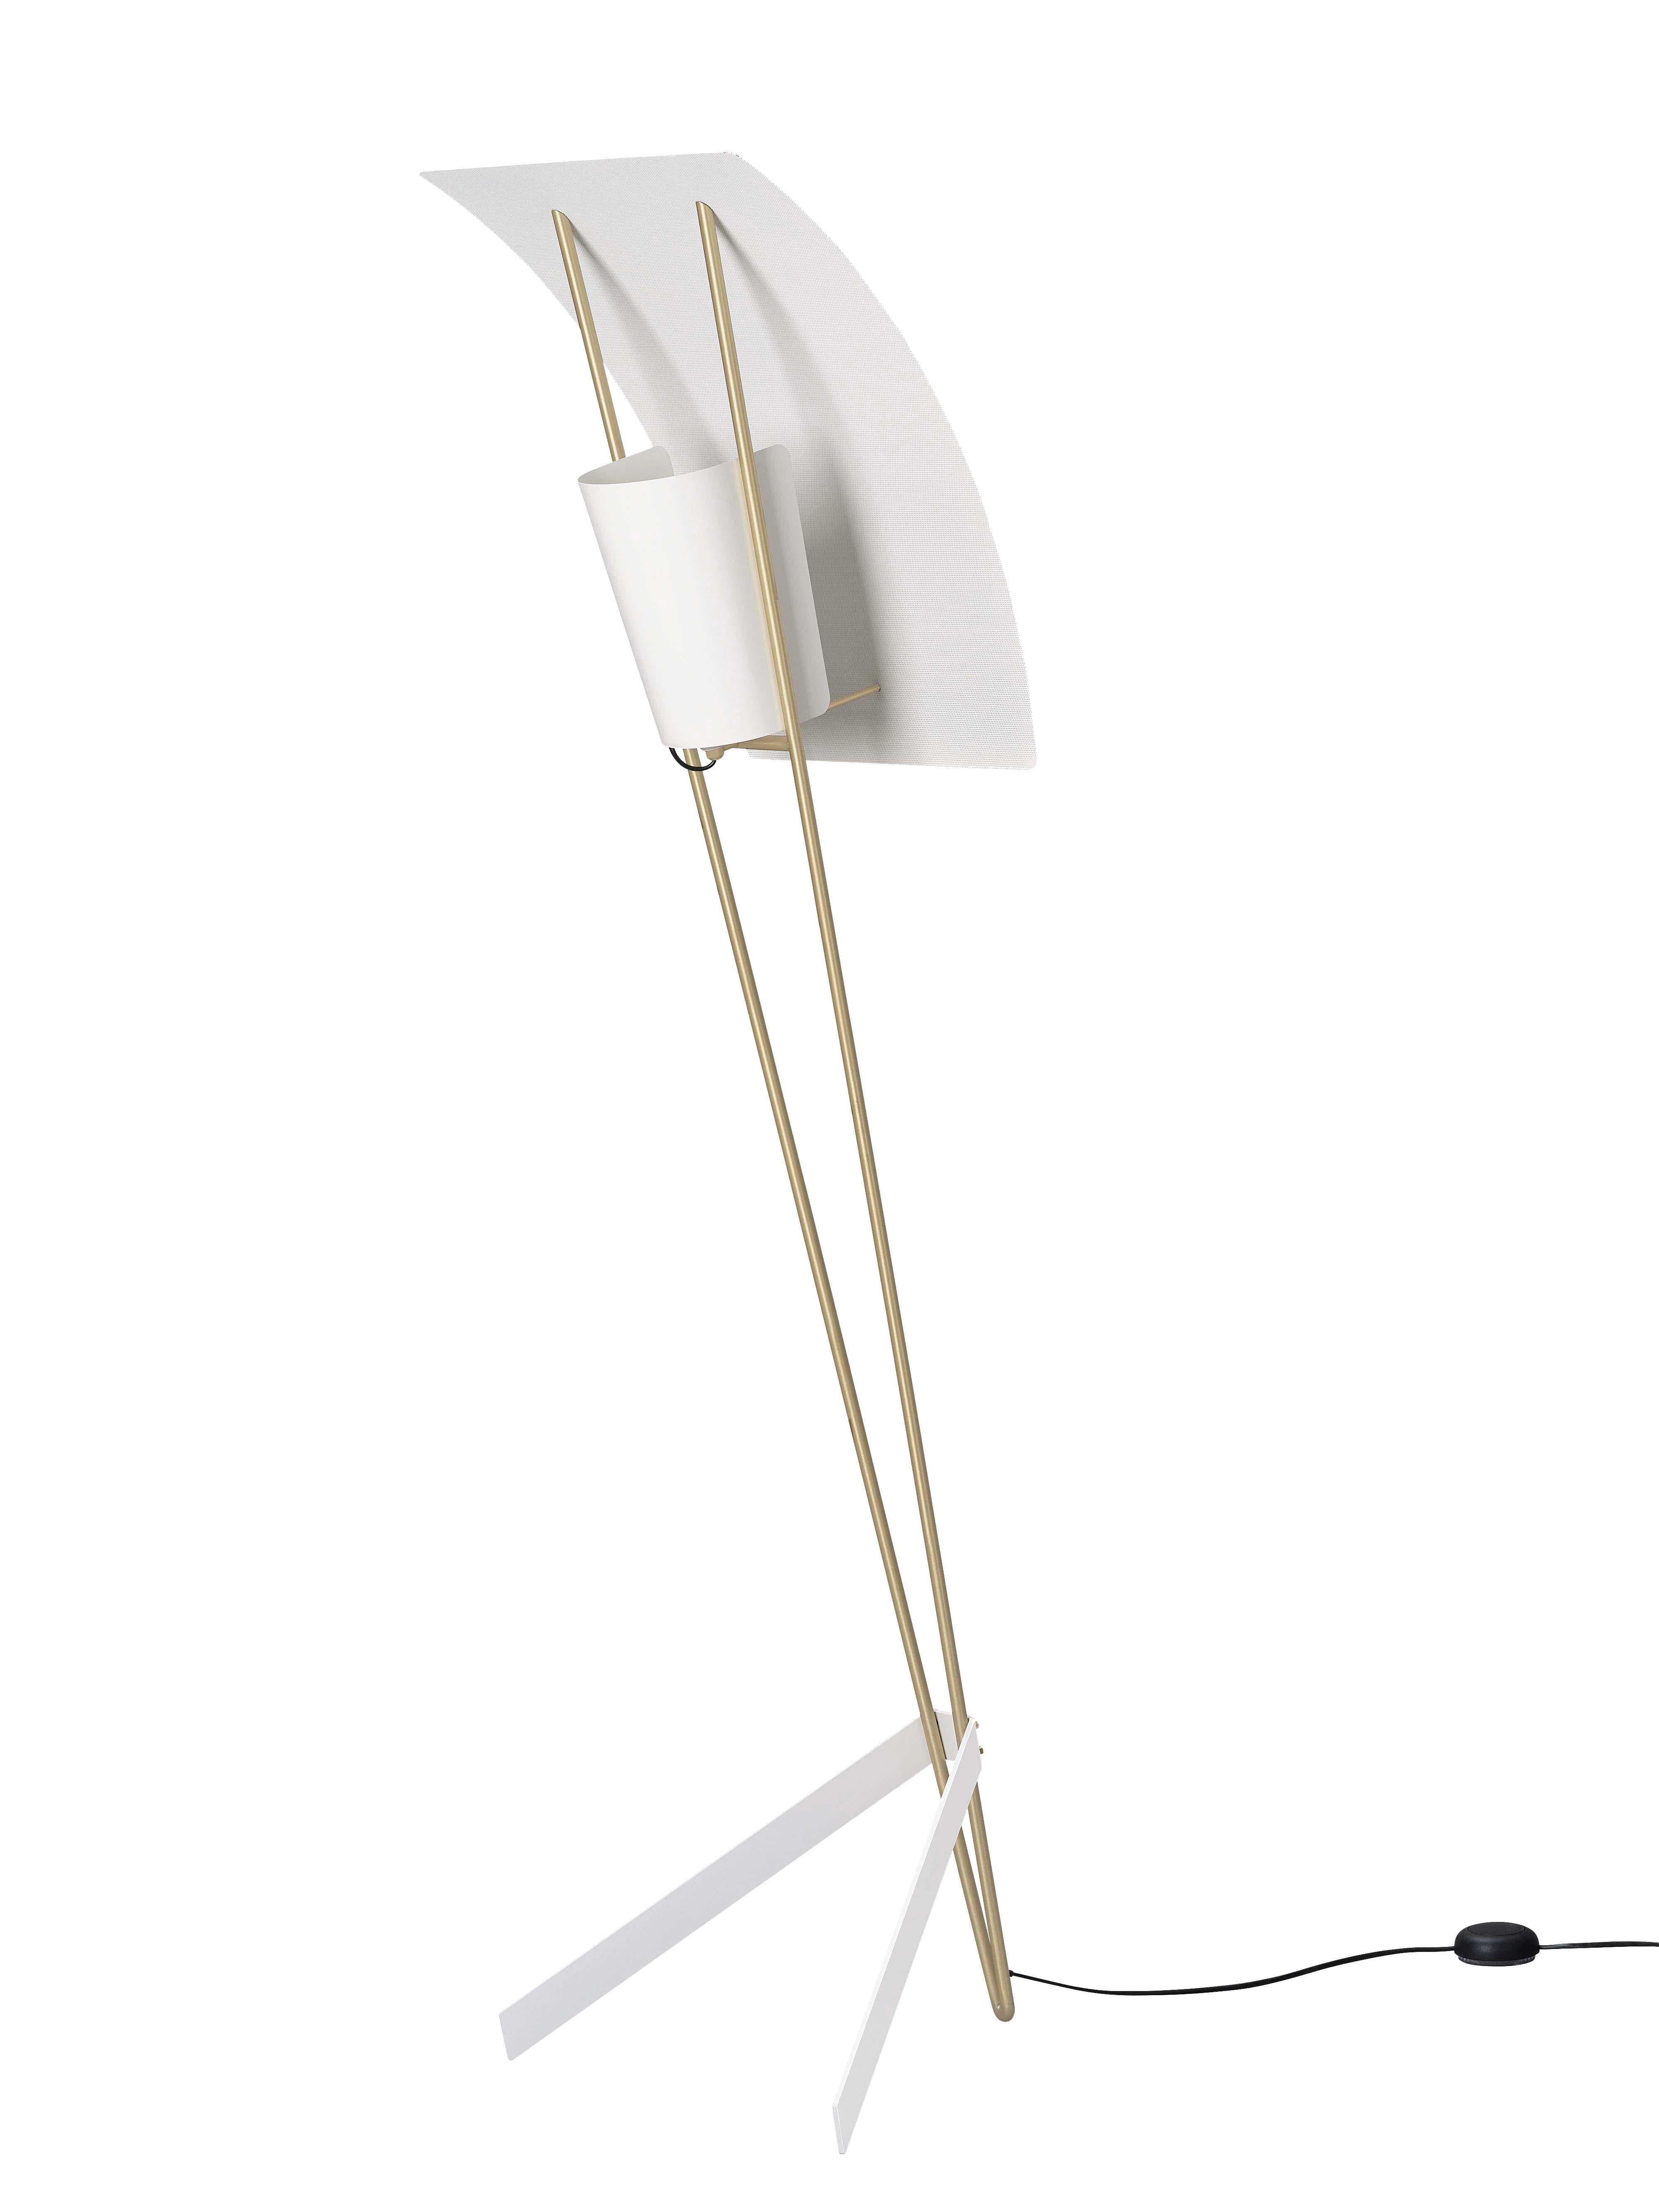 Pierre Guariche Kite Stehleuchte in Weiß für Sammode Studio. 

Diese 1958 von Pierre Guariche entworfene Stehleuchte wird in einer autorisierten Neuauflage von Sammode Studio in Frankreich hergestellt. Dabei werden viele der handwerklichen